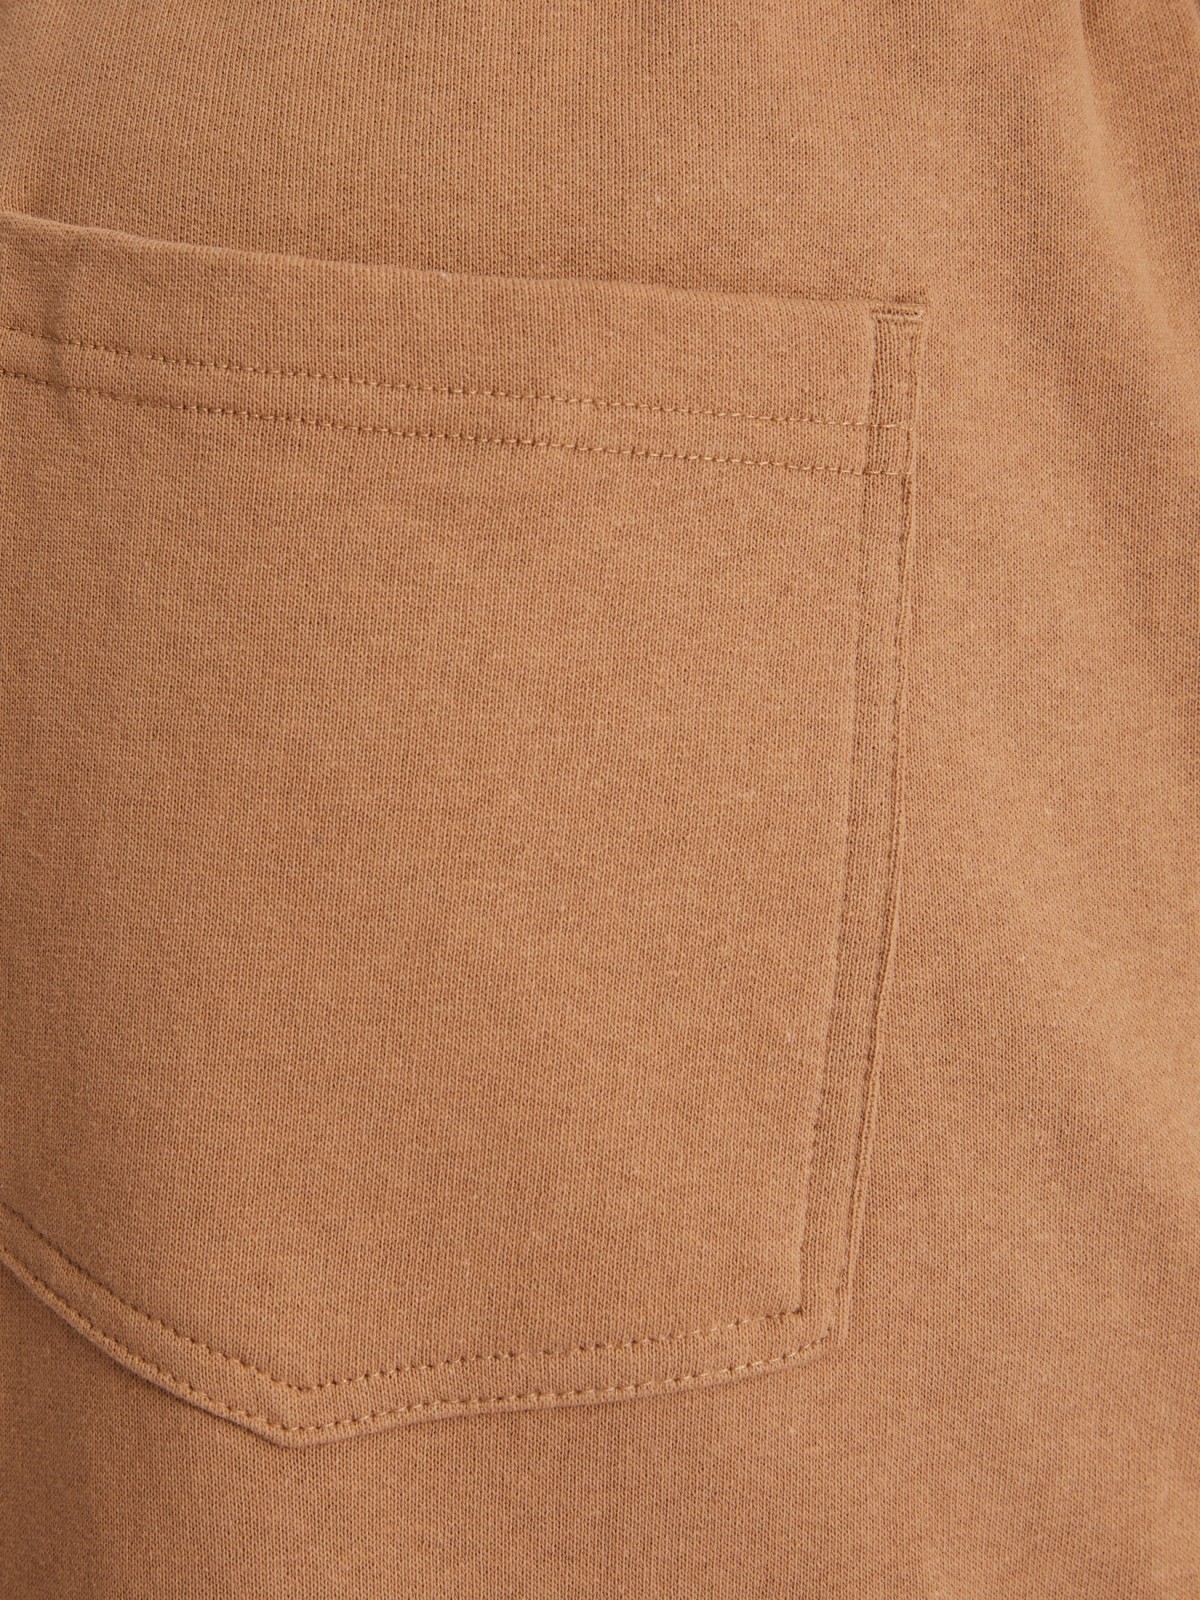 Трикотажные шорты на резинке из хлопка zolla 213317J5Q012, цвет бежевый, размер XS - фото 5